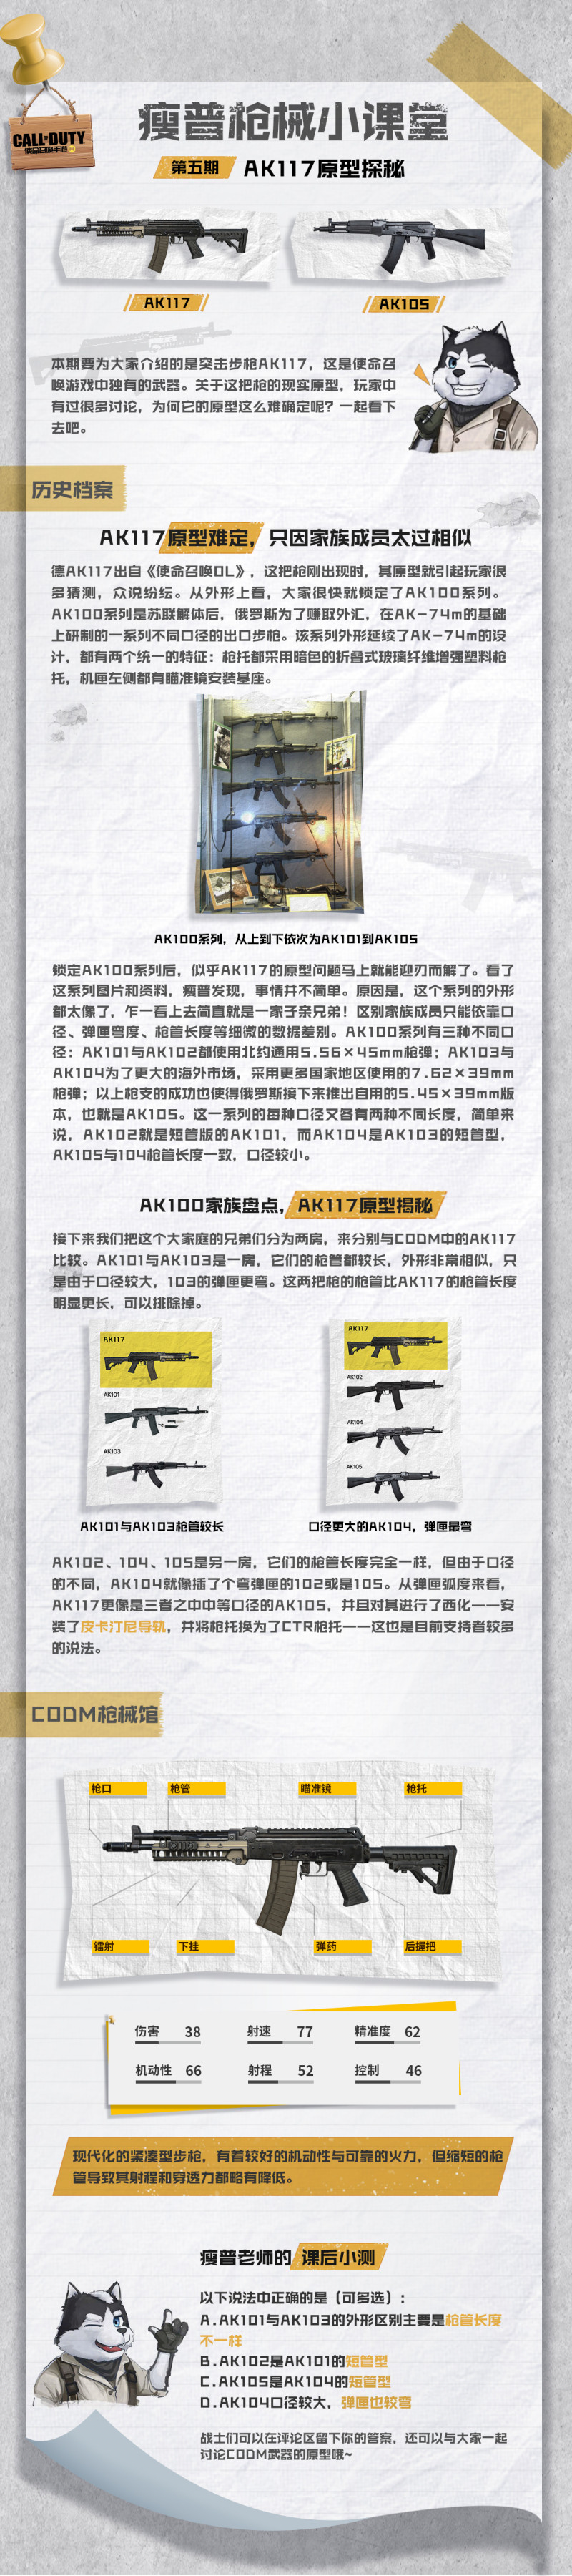 【枪械小课堂】第五期 AK117原型探秘